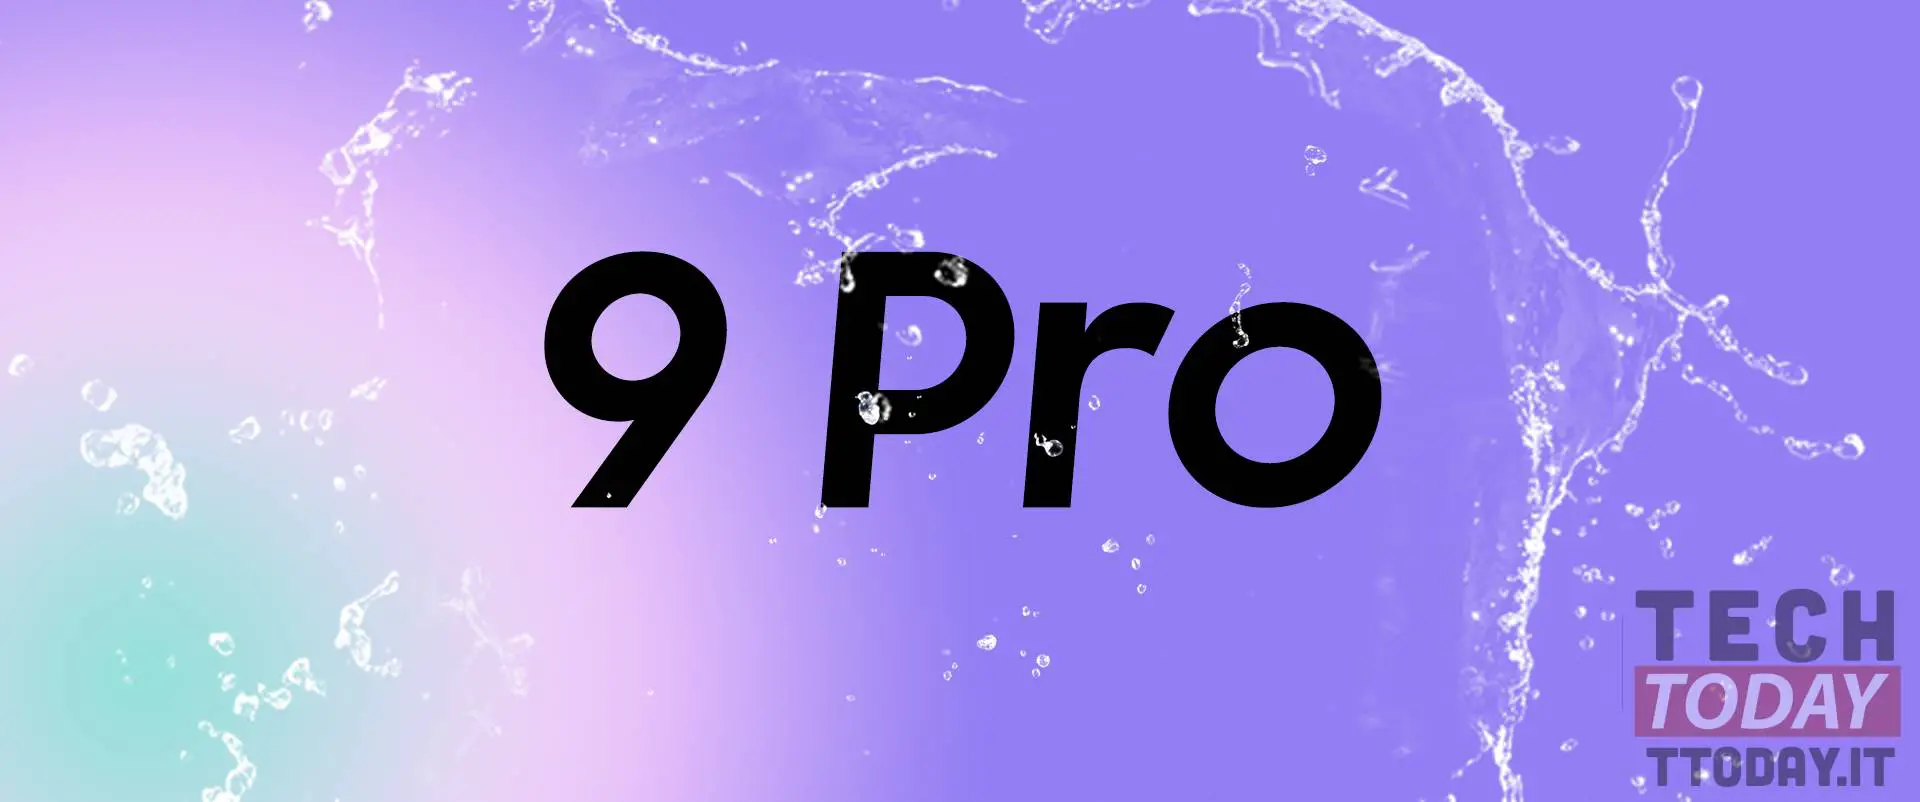 一加9 Pro ip68认证